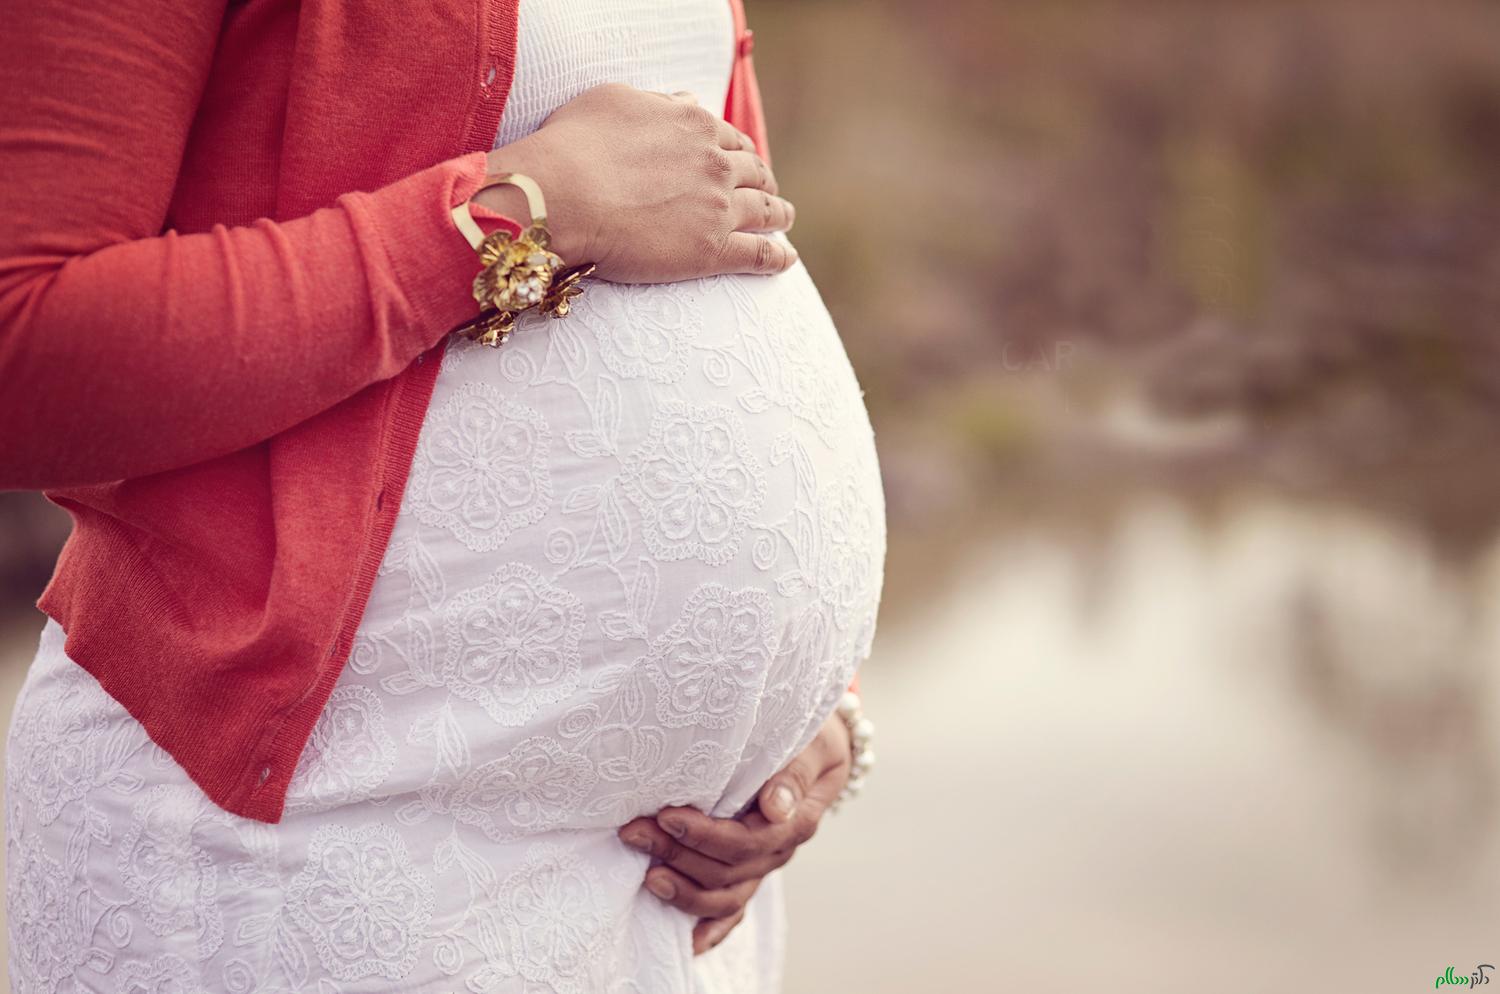 چگونه در دوران بارداری لباس بپوشیم؟